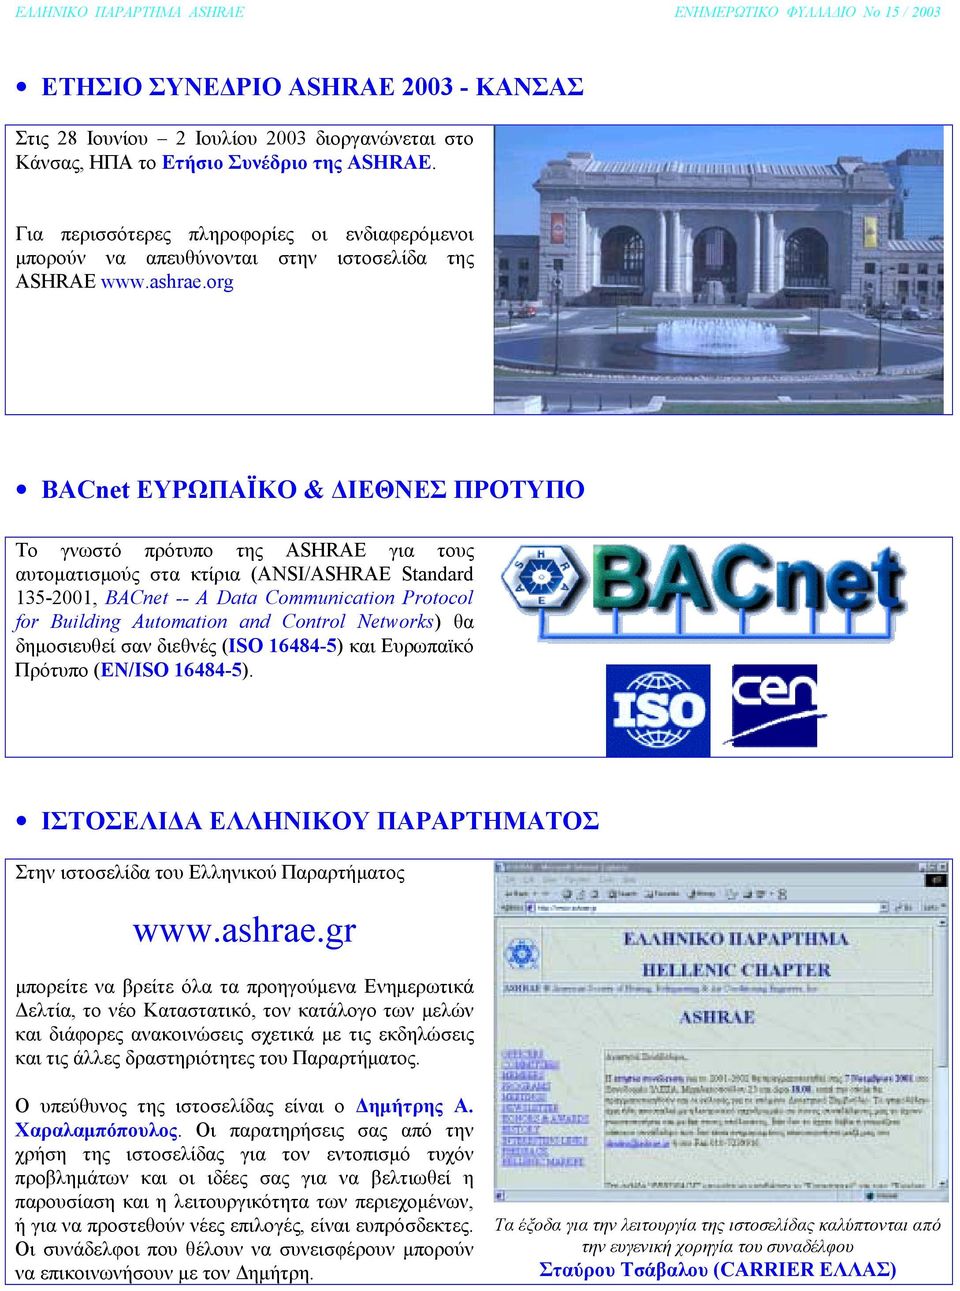 org BACnet ΕΥΡΩΠΑΪΚΟ & ΙΕΘΝΕΣ ΠΡΟΤΥΠΟ Το γνωστό πρότυπο της ASHRAE για τους αυτοµατισµούς στα κτίρια (ANSI/ASHRAE Standard 135-2001, BACnet -- A Data Communication Protocol for Building Automation